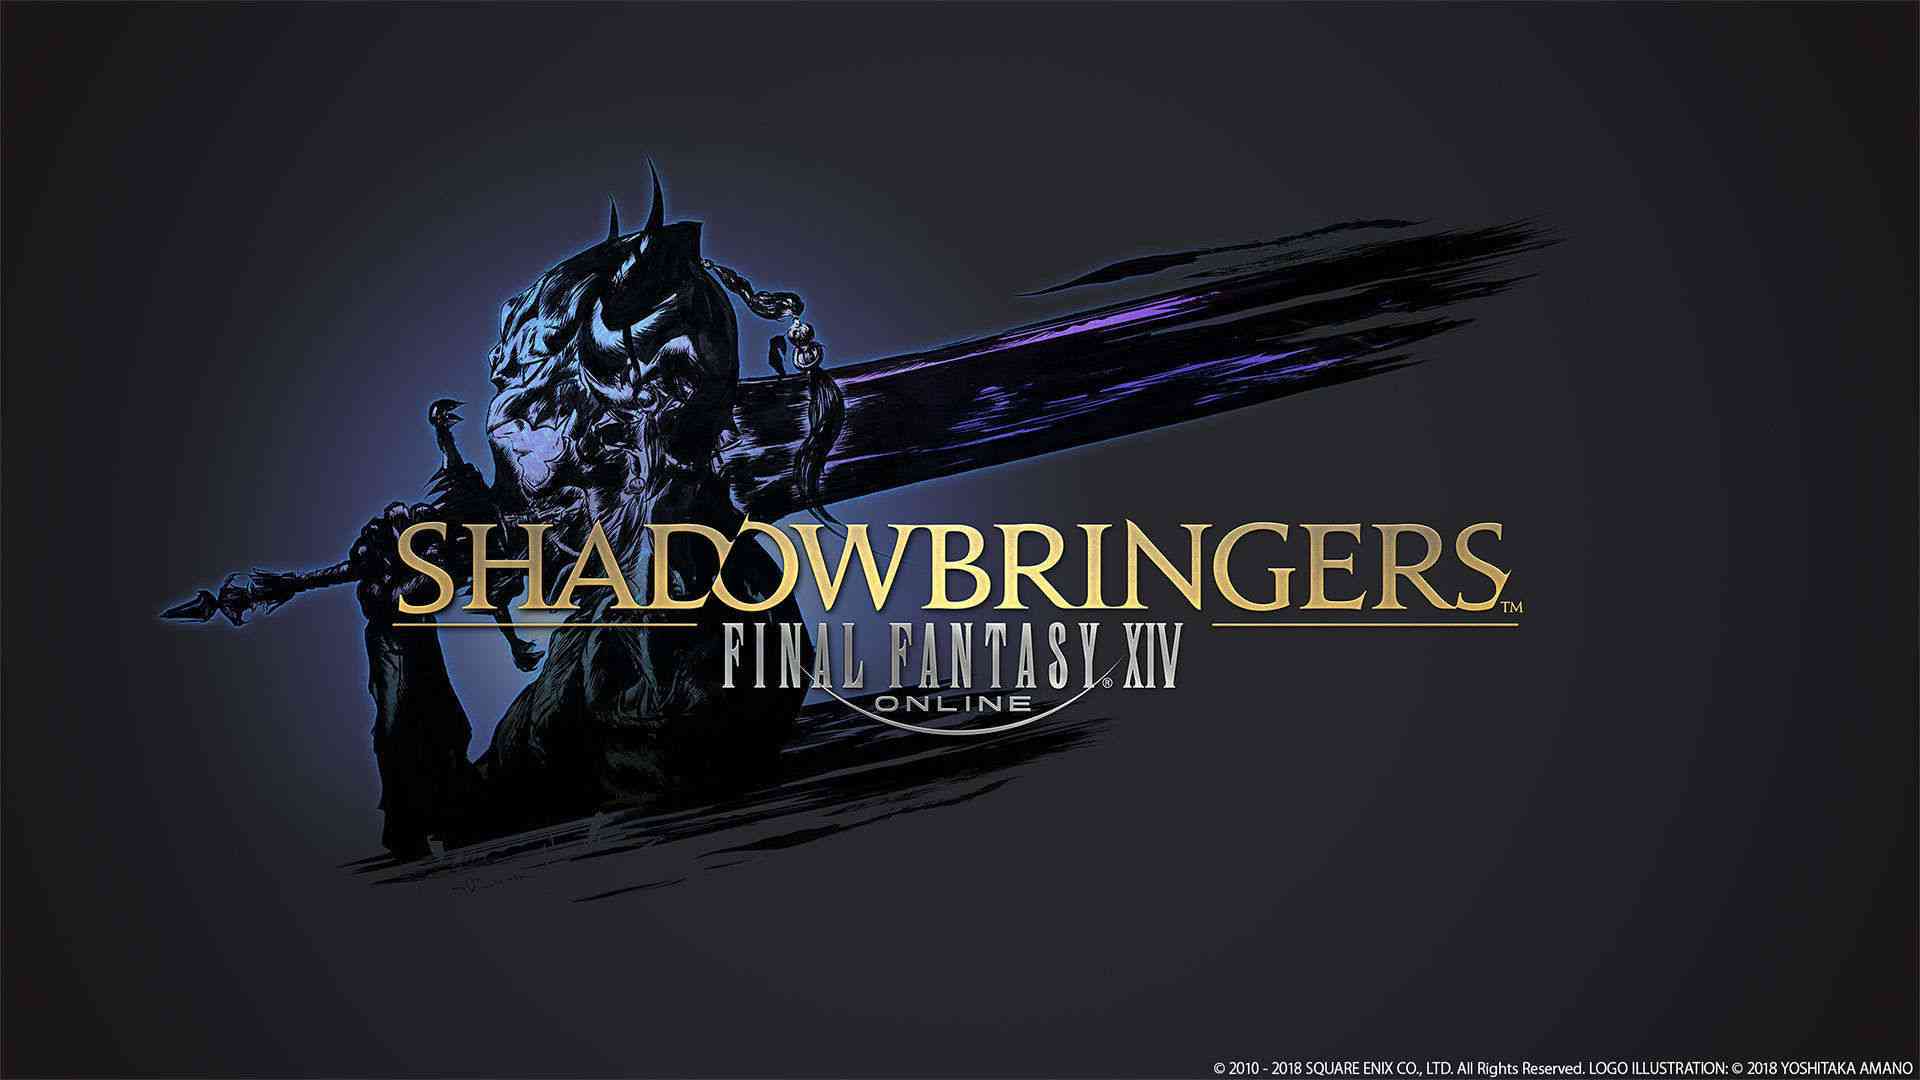 square enix announces shadowbringers expansion for final fantasy xiv 688 big 1